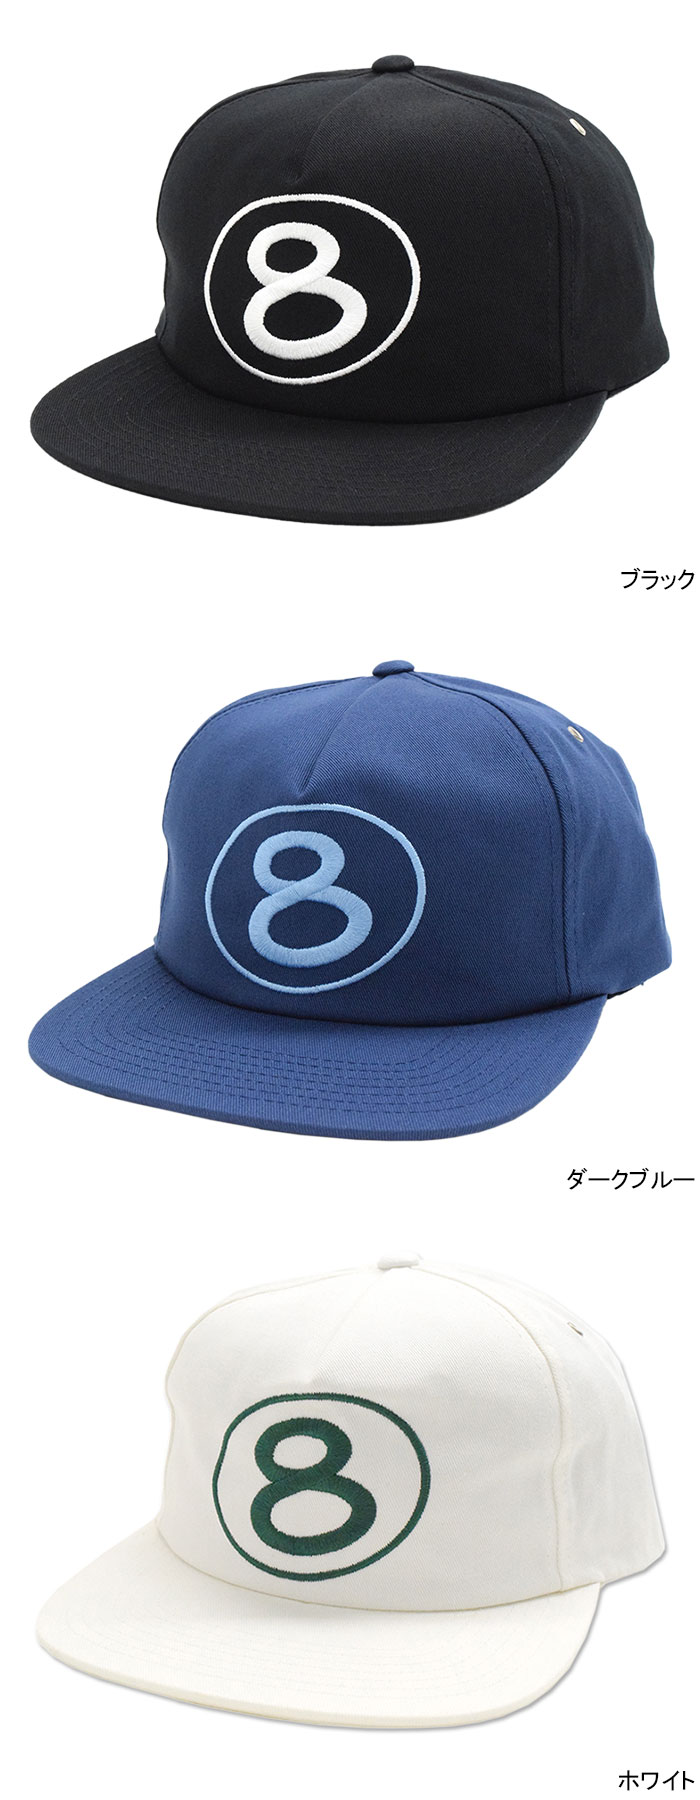 ステューシー キャップ 帽子 STUSSY Number 8 Snapback Cap (ベース 